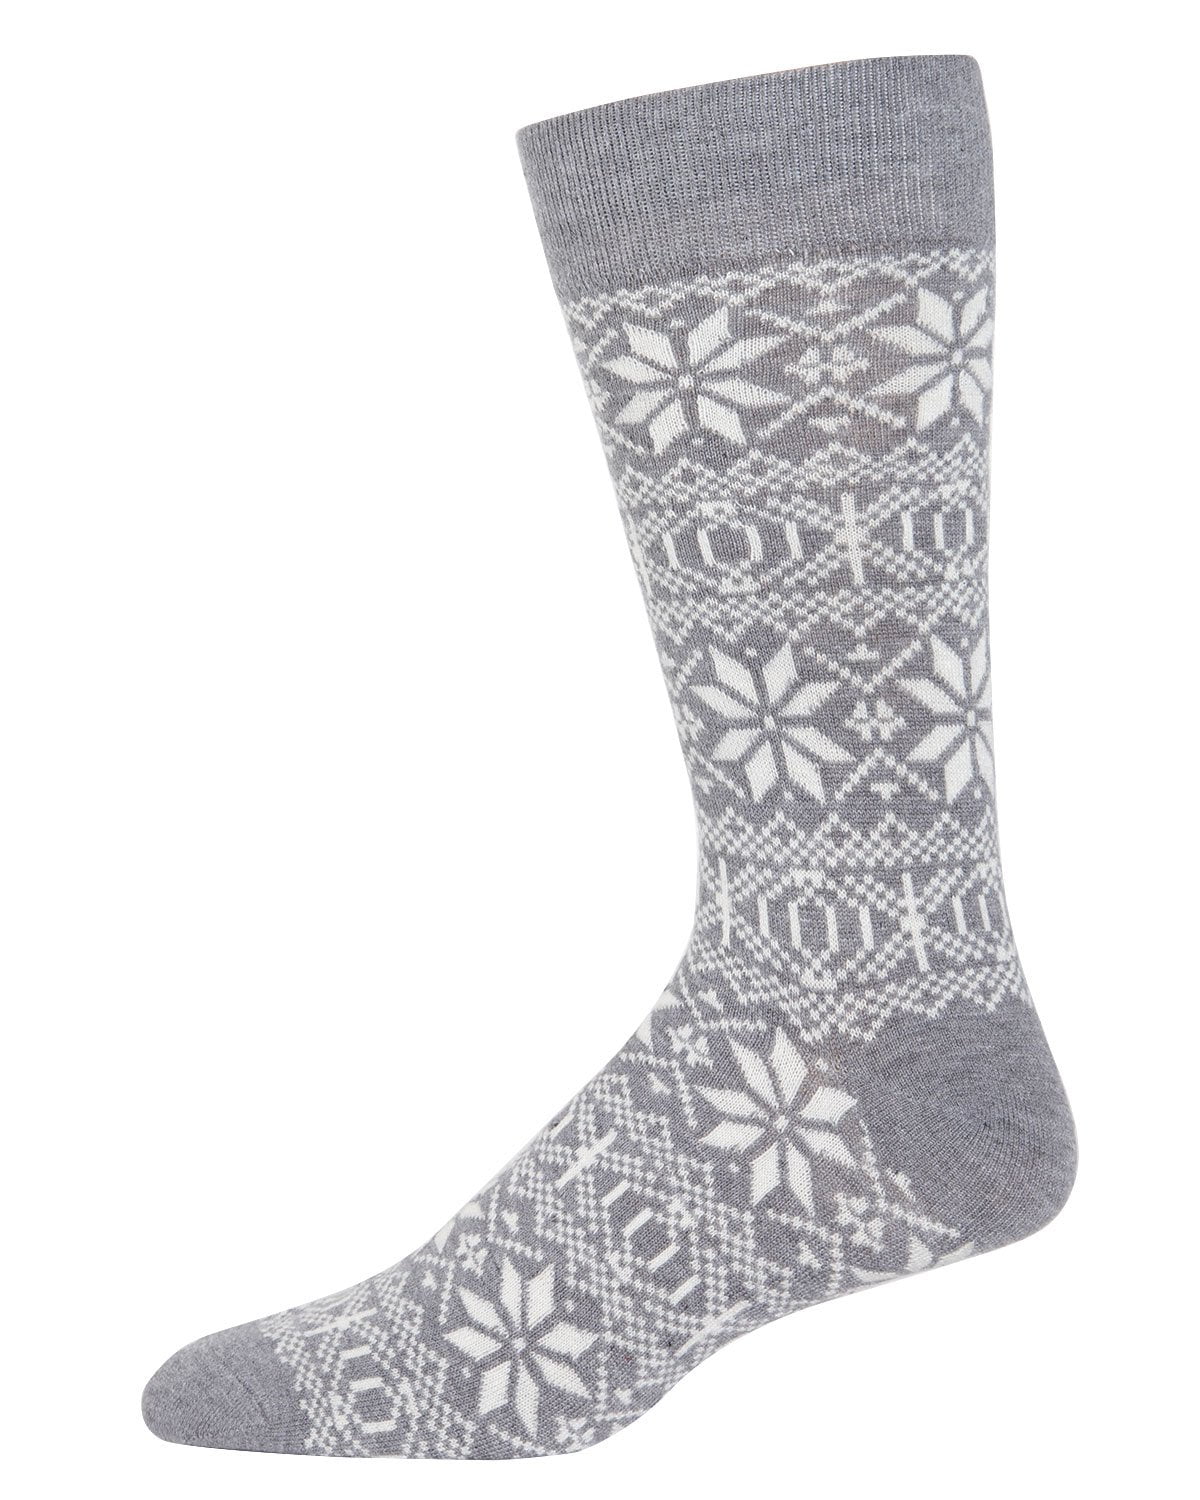 MeMoi - MeMoi Snowflake Cashmere Men's Crew Socks | Cute Fun Socks for ...